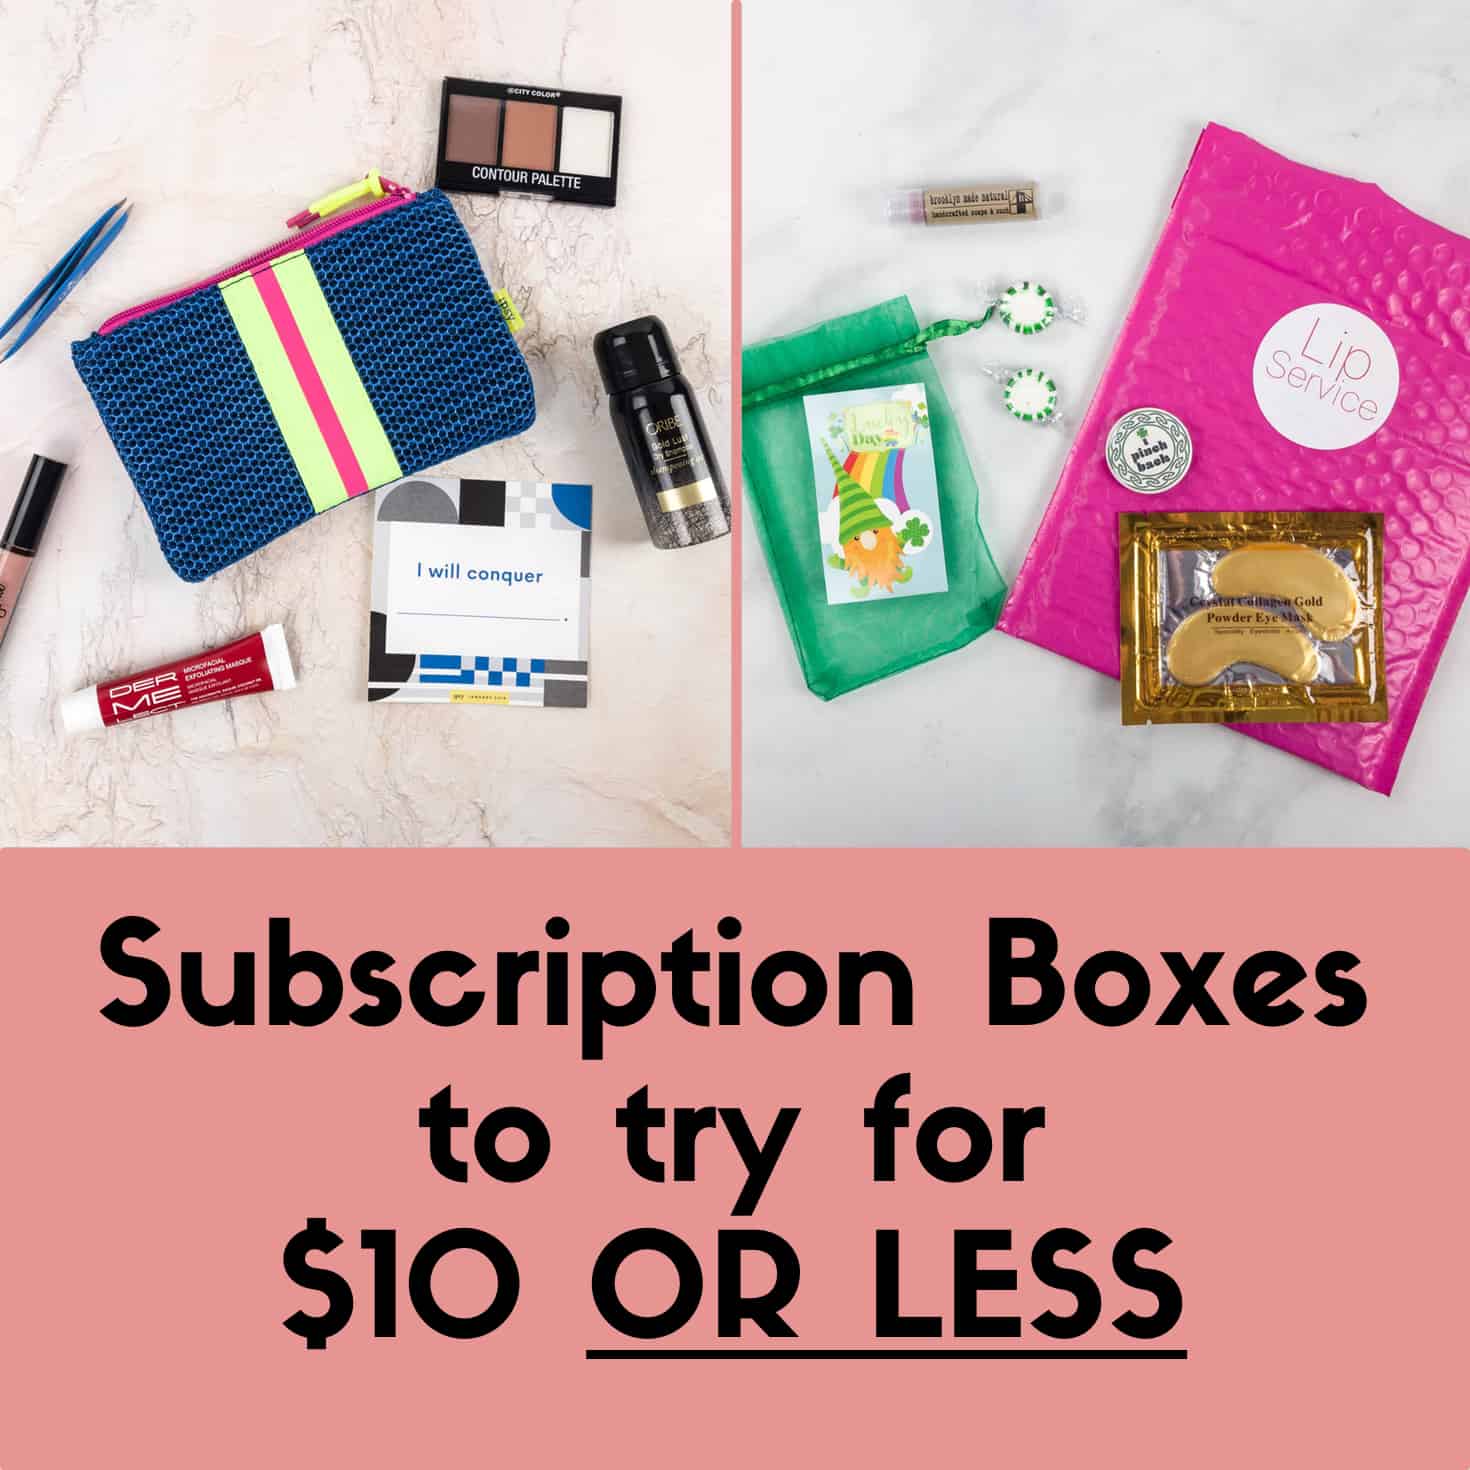 Sample subscription box deals